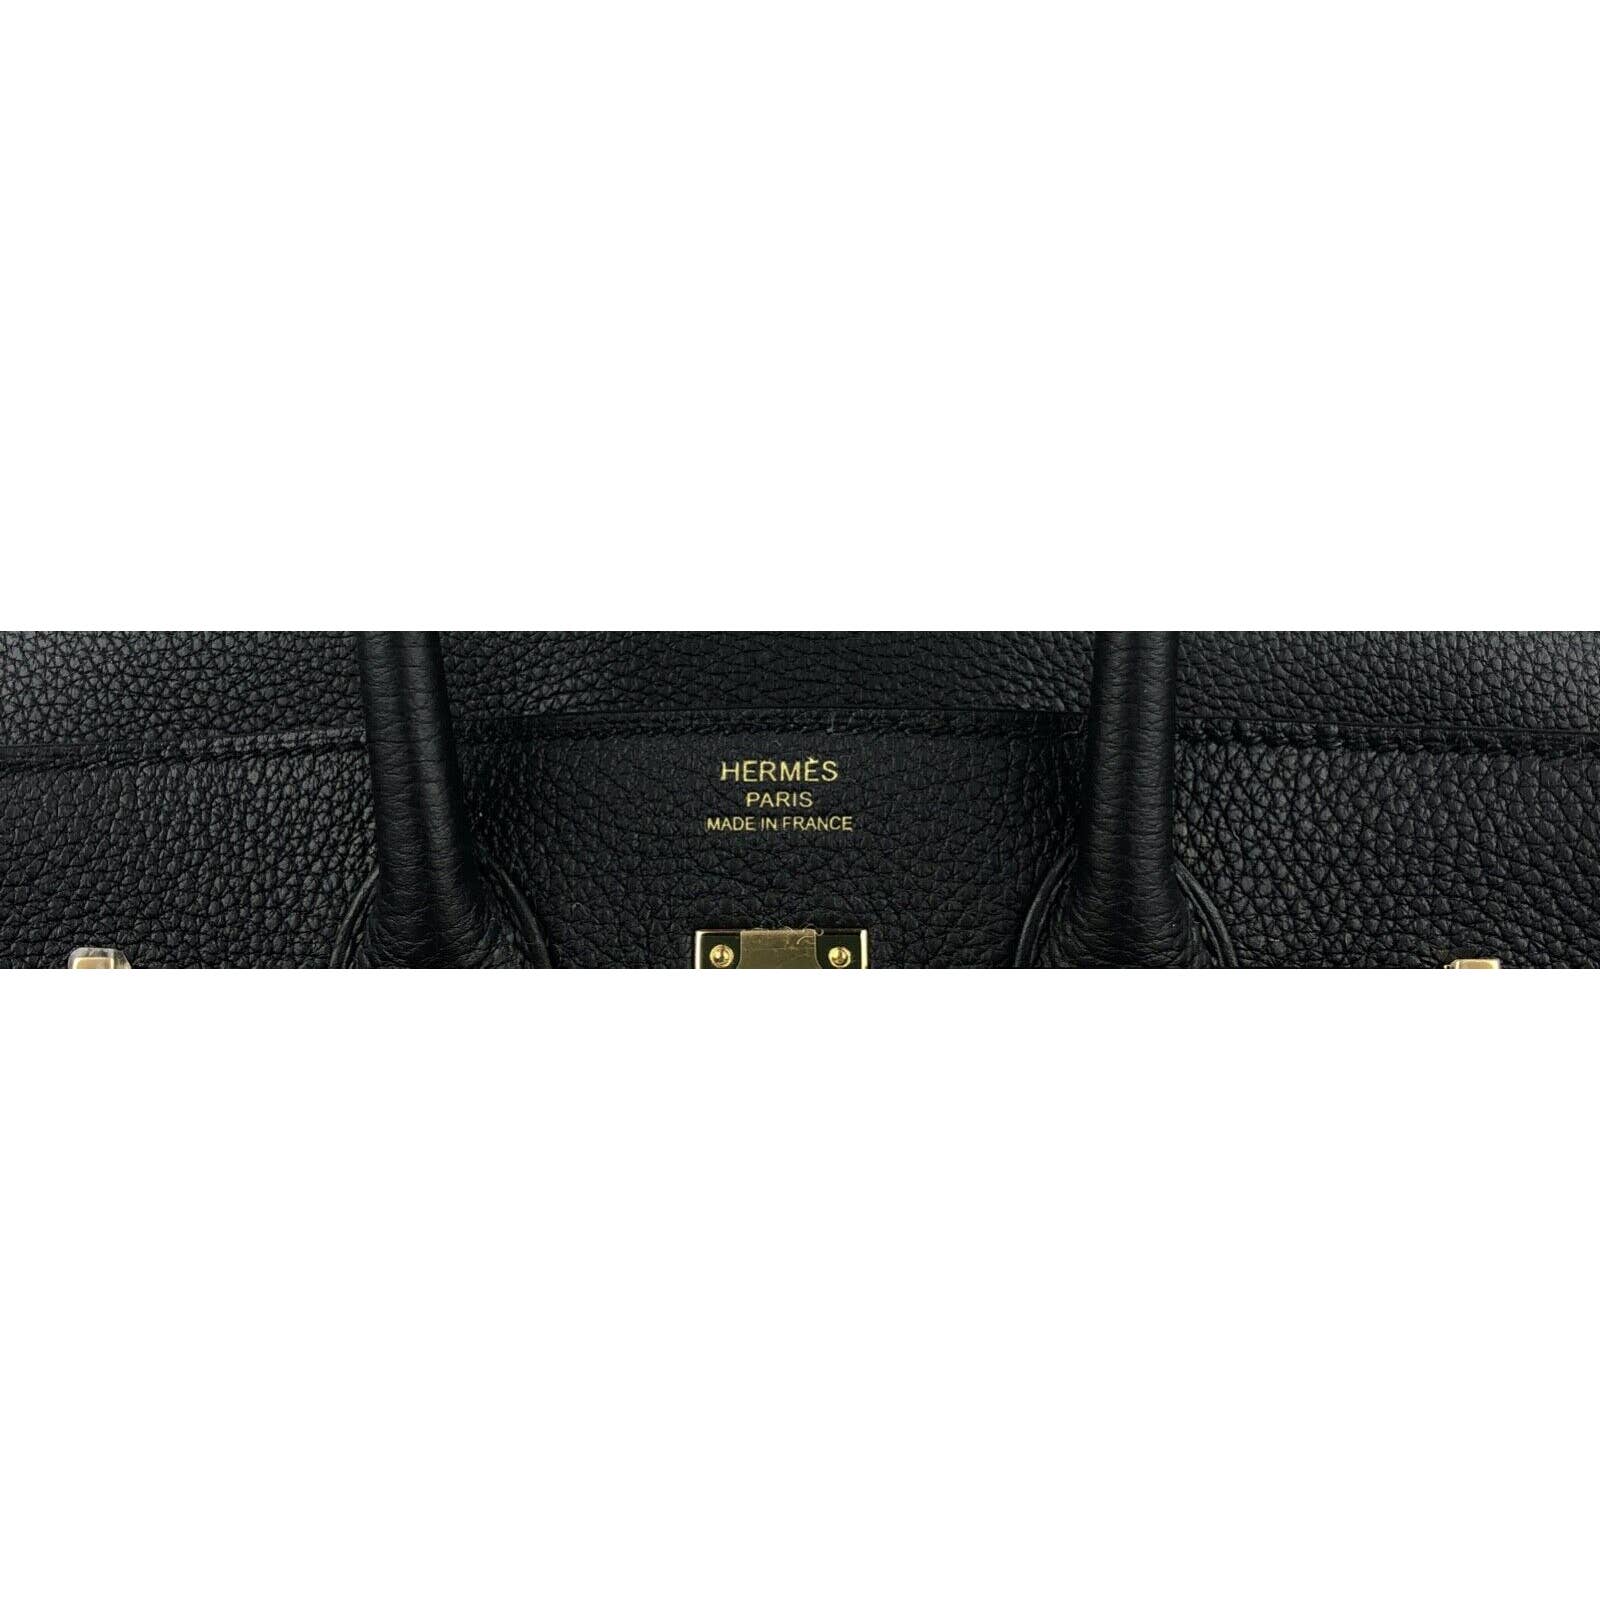 Hermès - Birkin 25 - Gold Togo - GHW - Brand New - 2023